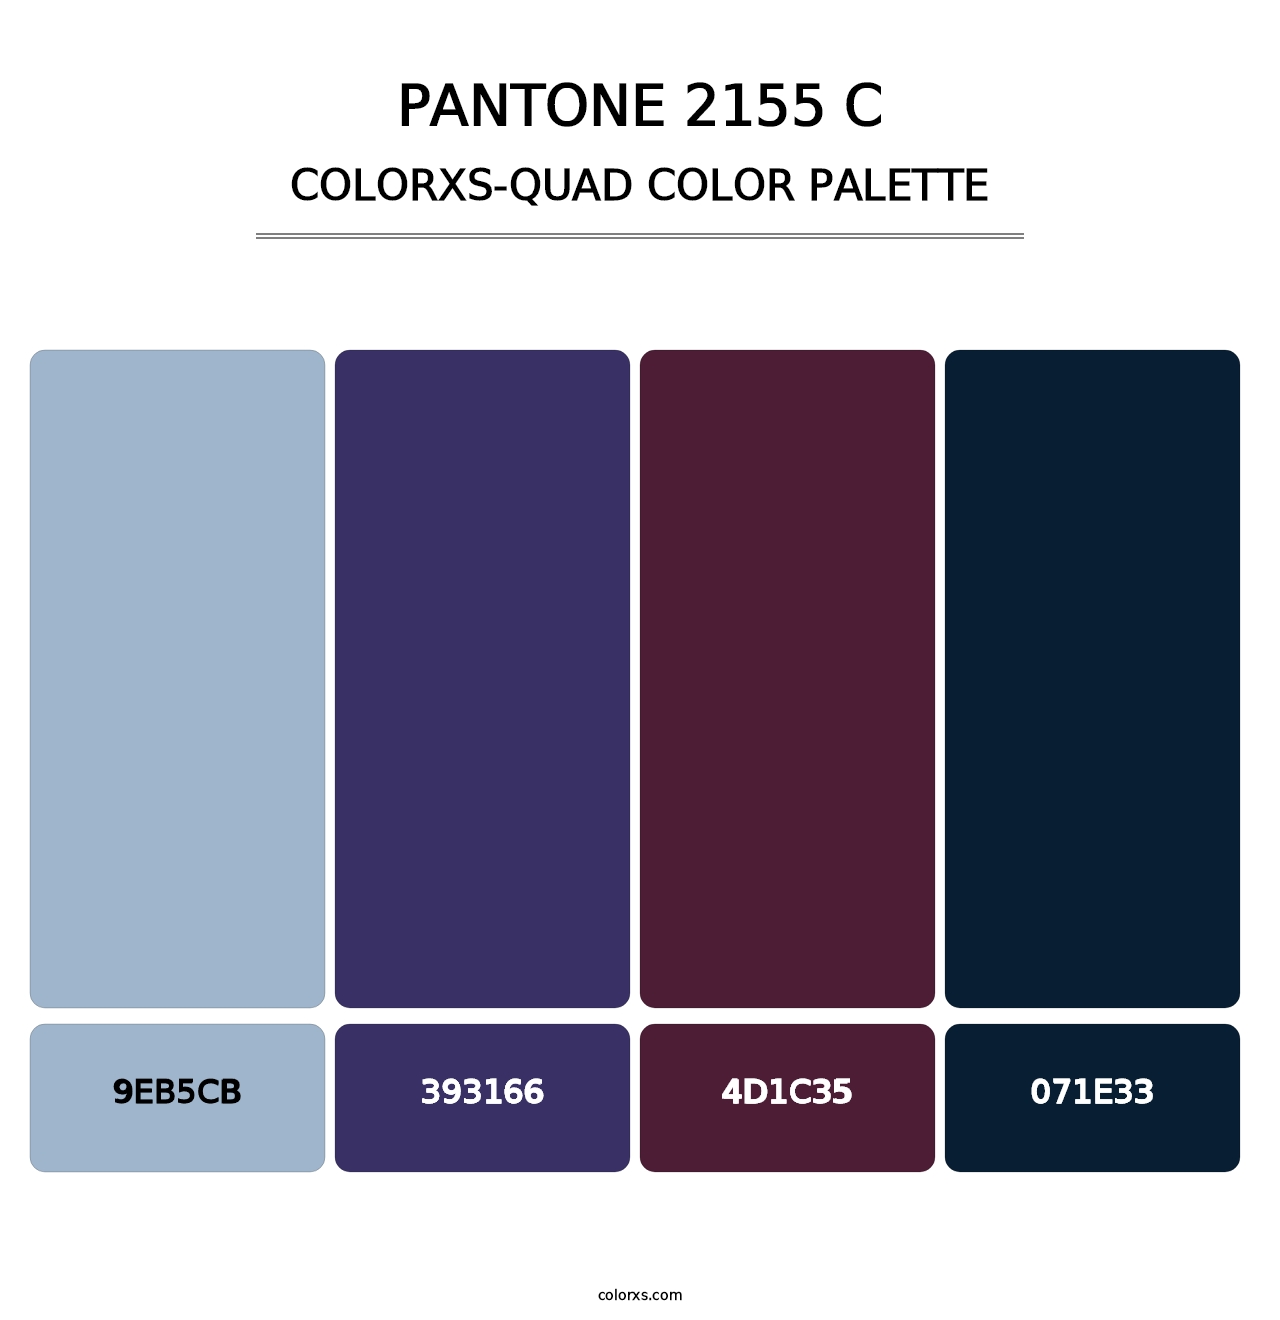 PANTONE 2155 C - Colorxs Quad Palette